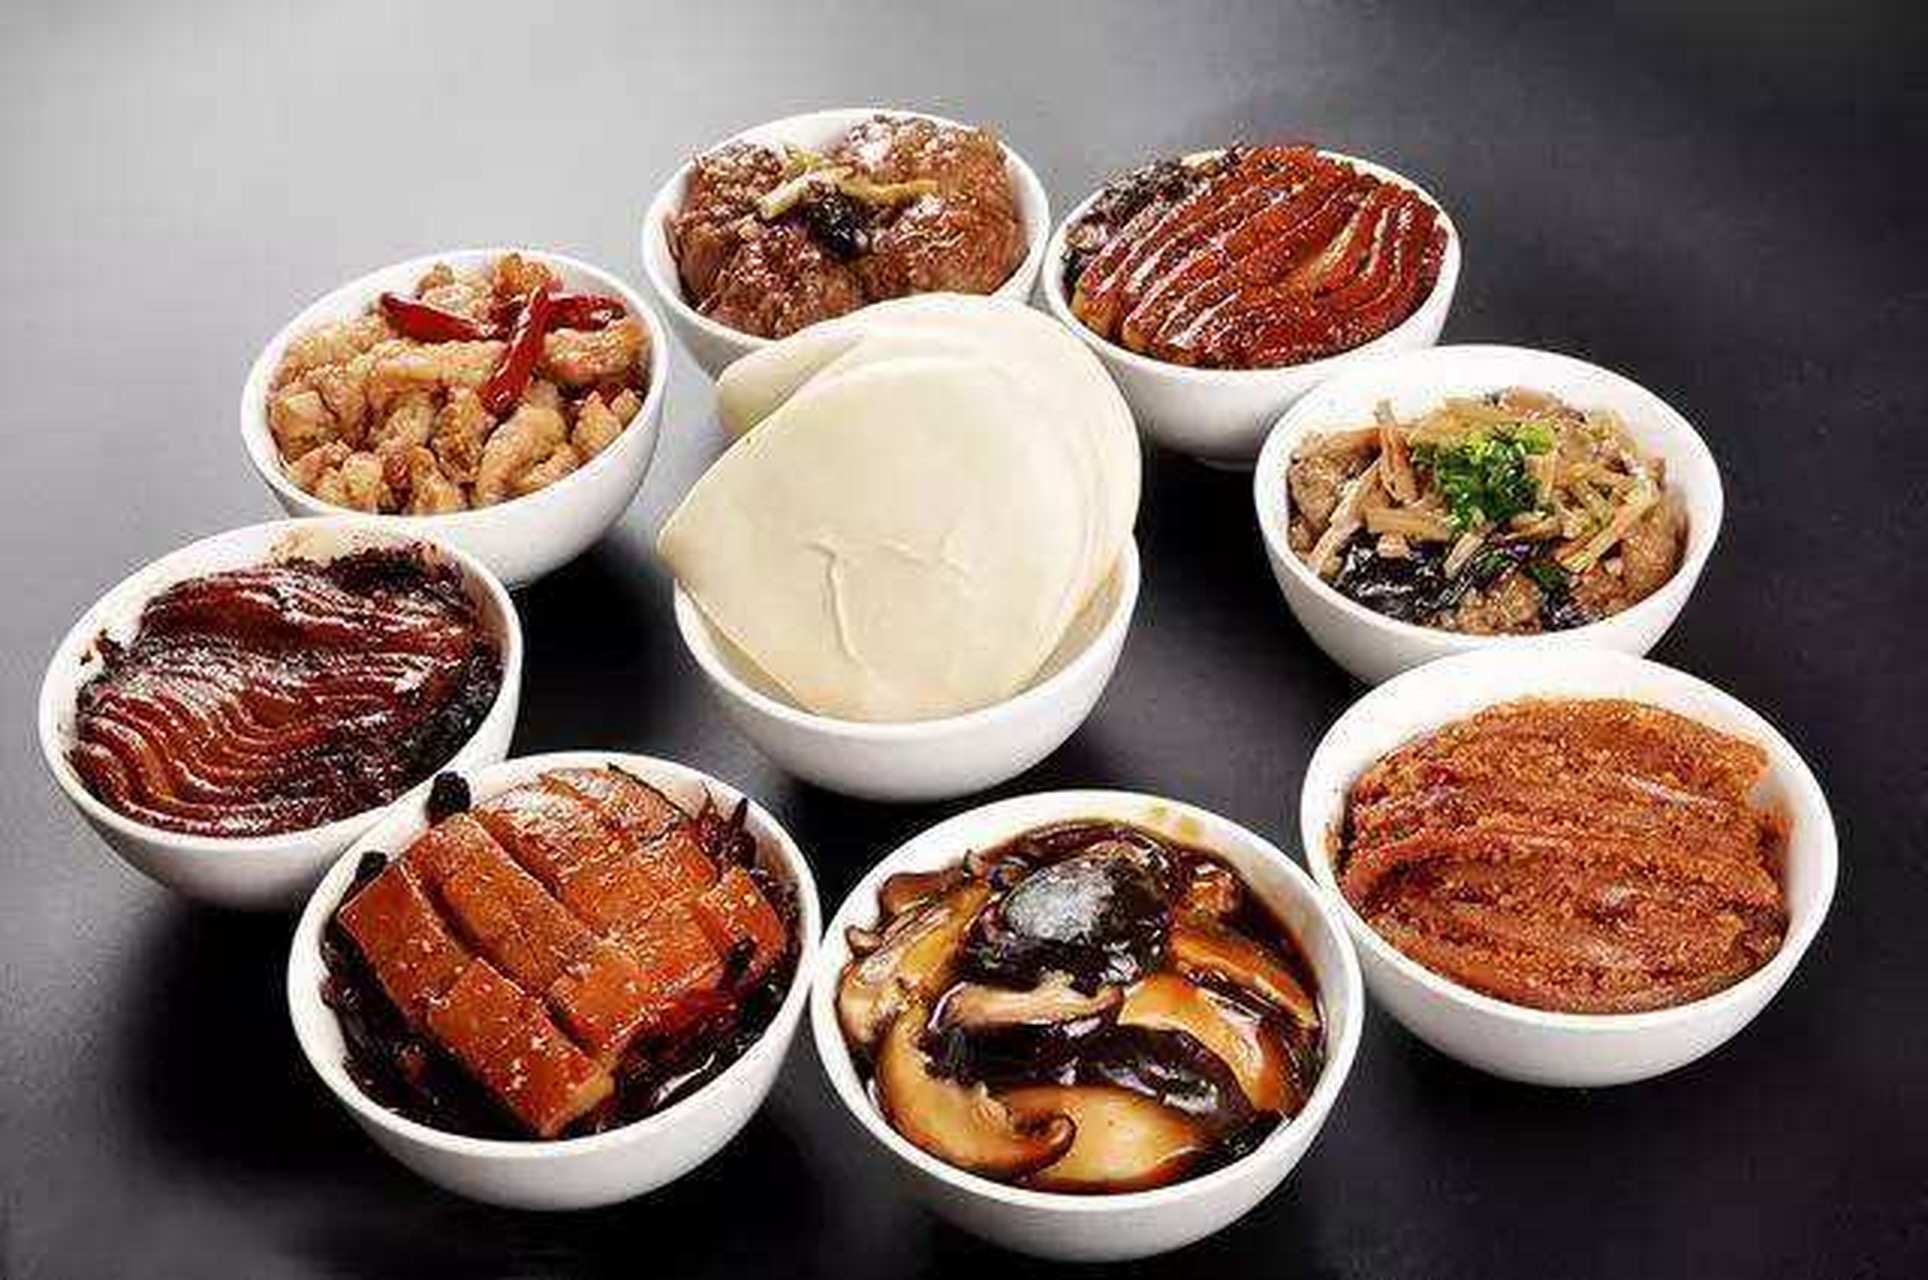 正定八大碗是石家庄非常著名的美食,主要是由四荤四素组成的